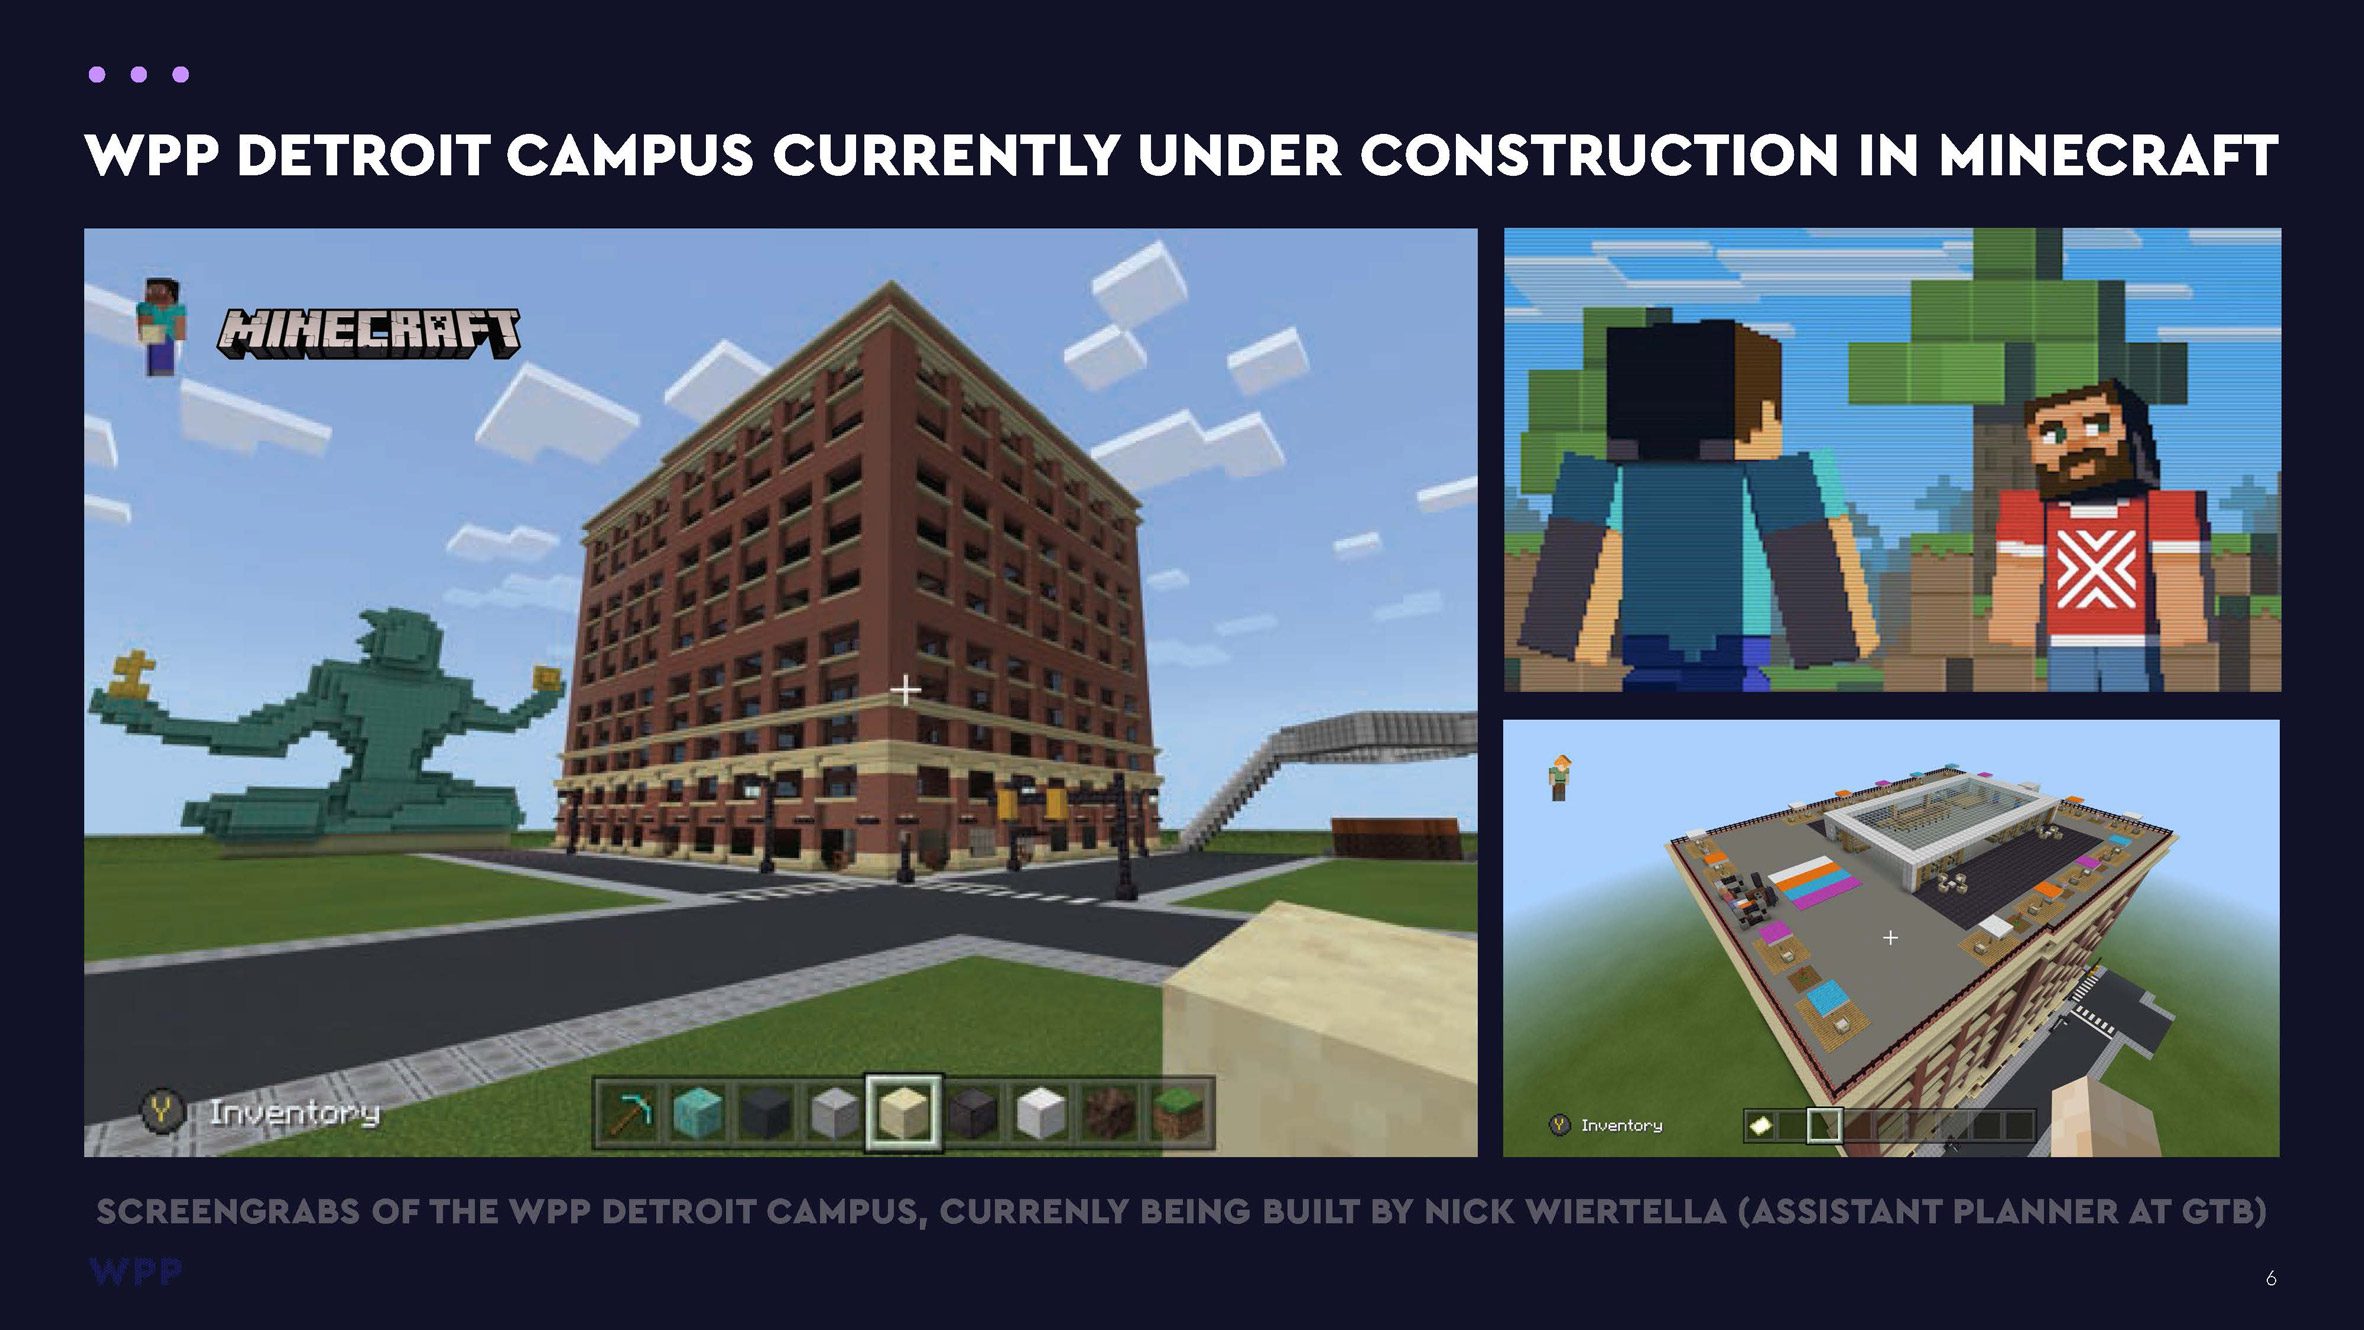 WPP Detroit campus under construction in Minecraft